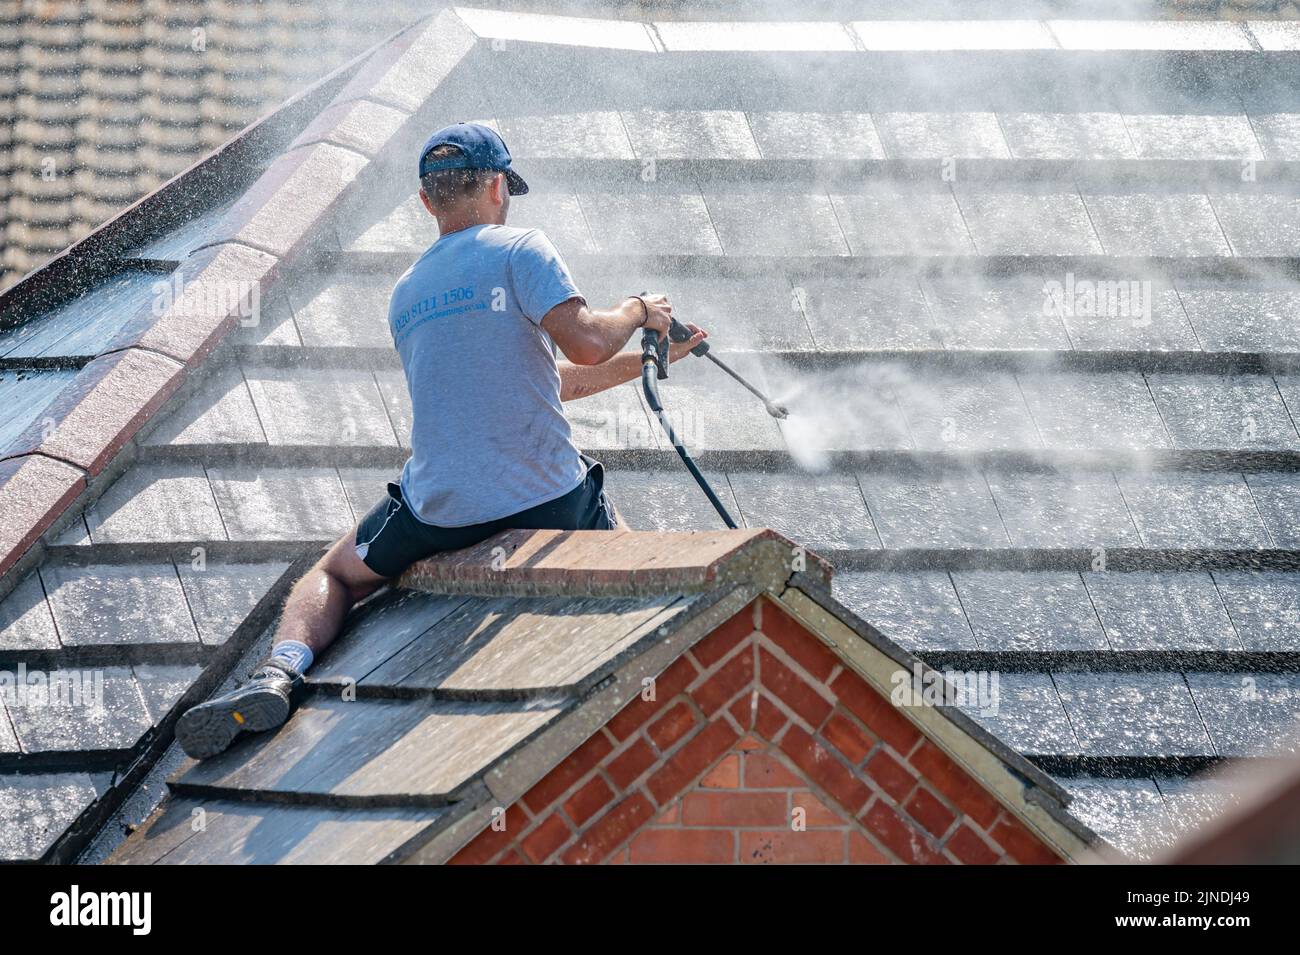 Homme assis sur le toit carrelé d'une maison, à l'aide d'un nettoyeur à pression sur un tuyau, tirant un jet d'eau pour nettoyer le toit et les tuiles. Banque D'Images